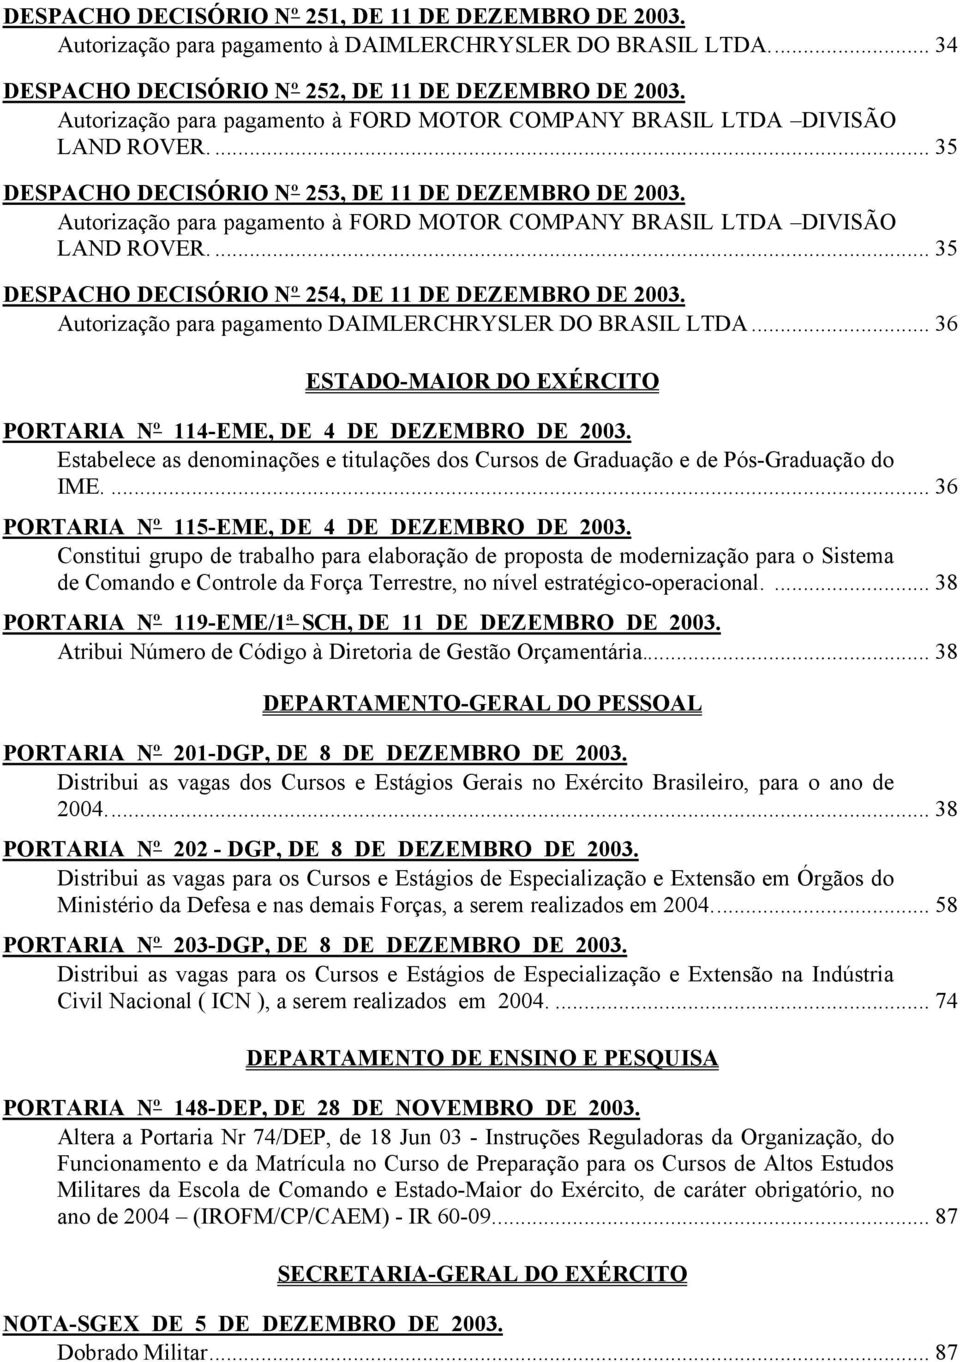 Autorização para pagamento à FORD MOTOR COMPANY BRASIL LTDA DIVISÃO LAND ROVER.... 35 DESPACHO DECISÓRIO Nº 254, DE 11 DE DEZEMBRO DE 2003. Autorização para pagamento DAIMLERCHRYSLER DO BRASIL LTDA.